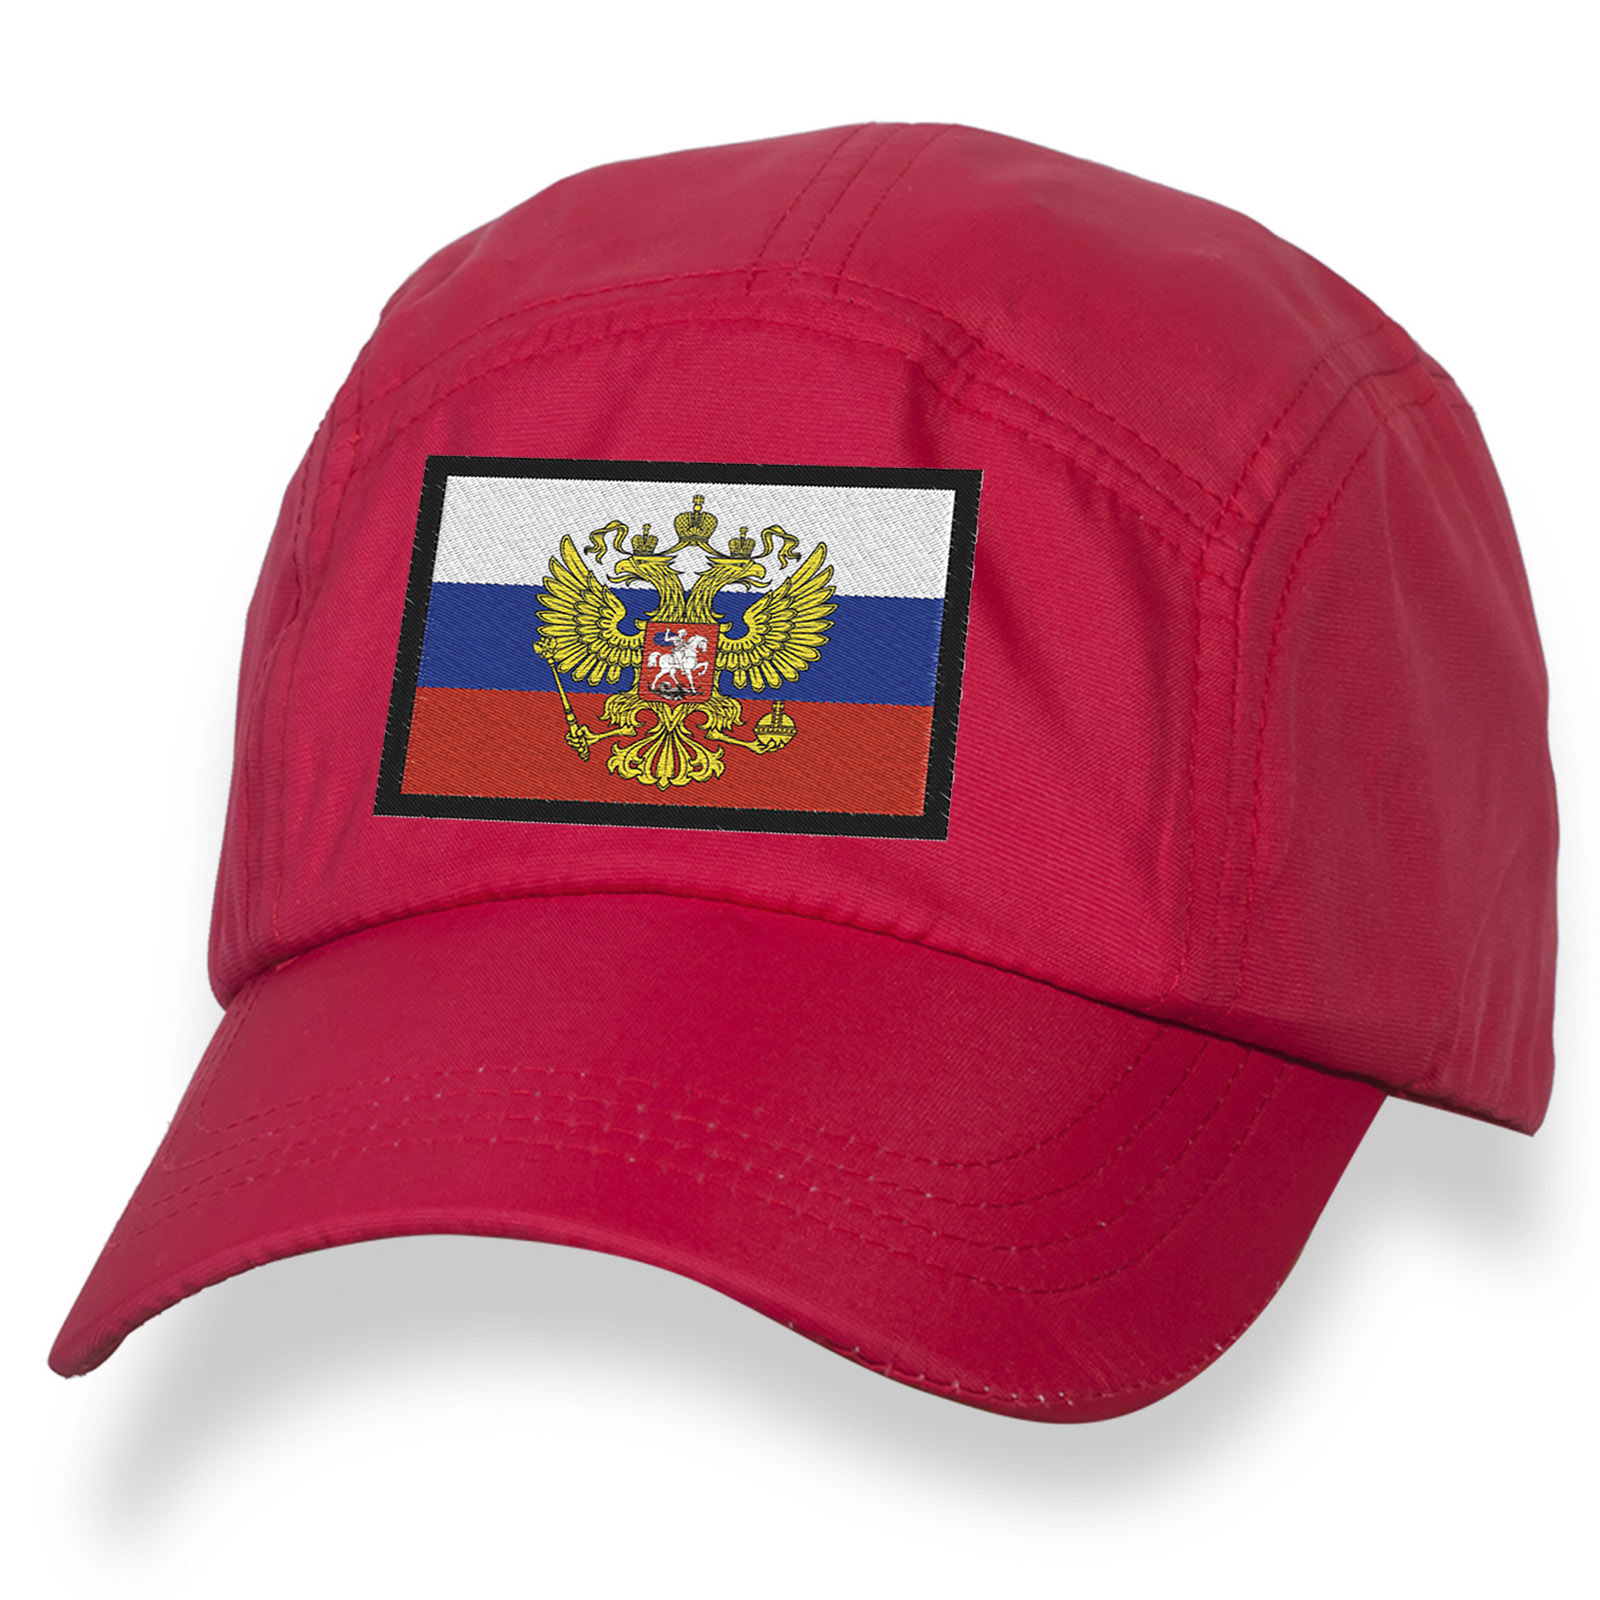 Купить в интернет магазине вышитую бейсболку с флагом РФ